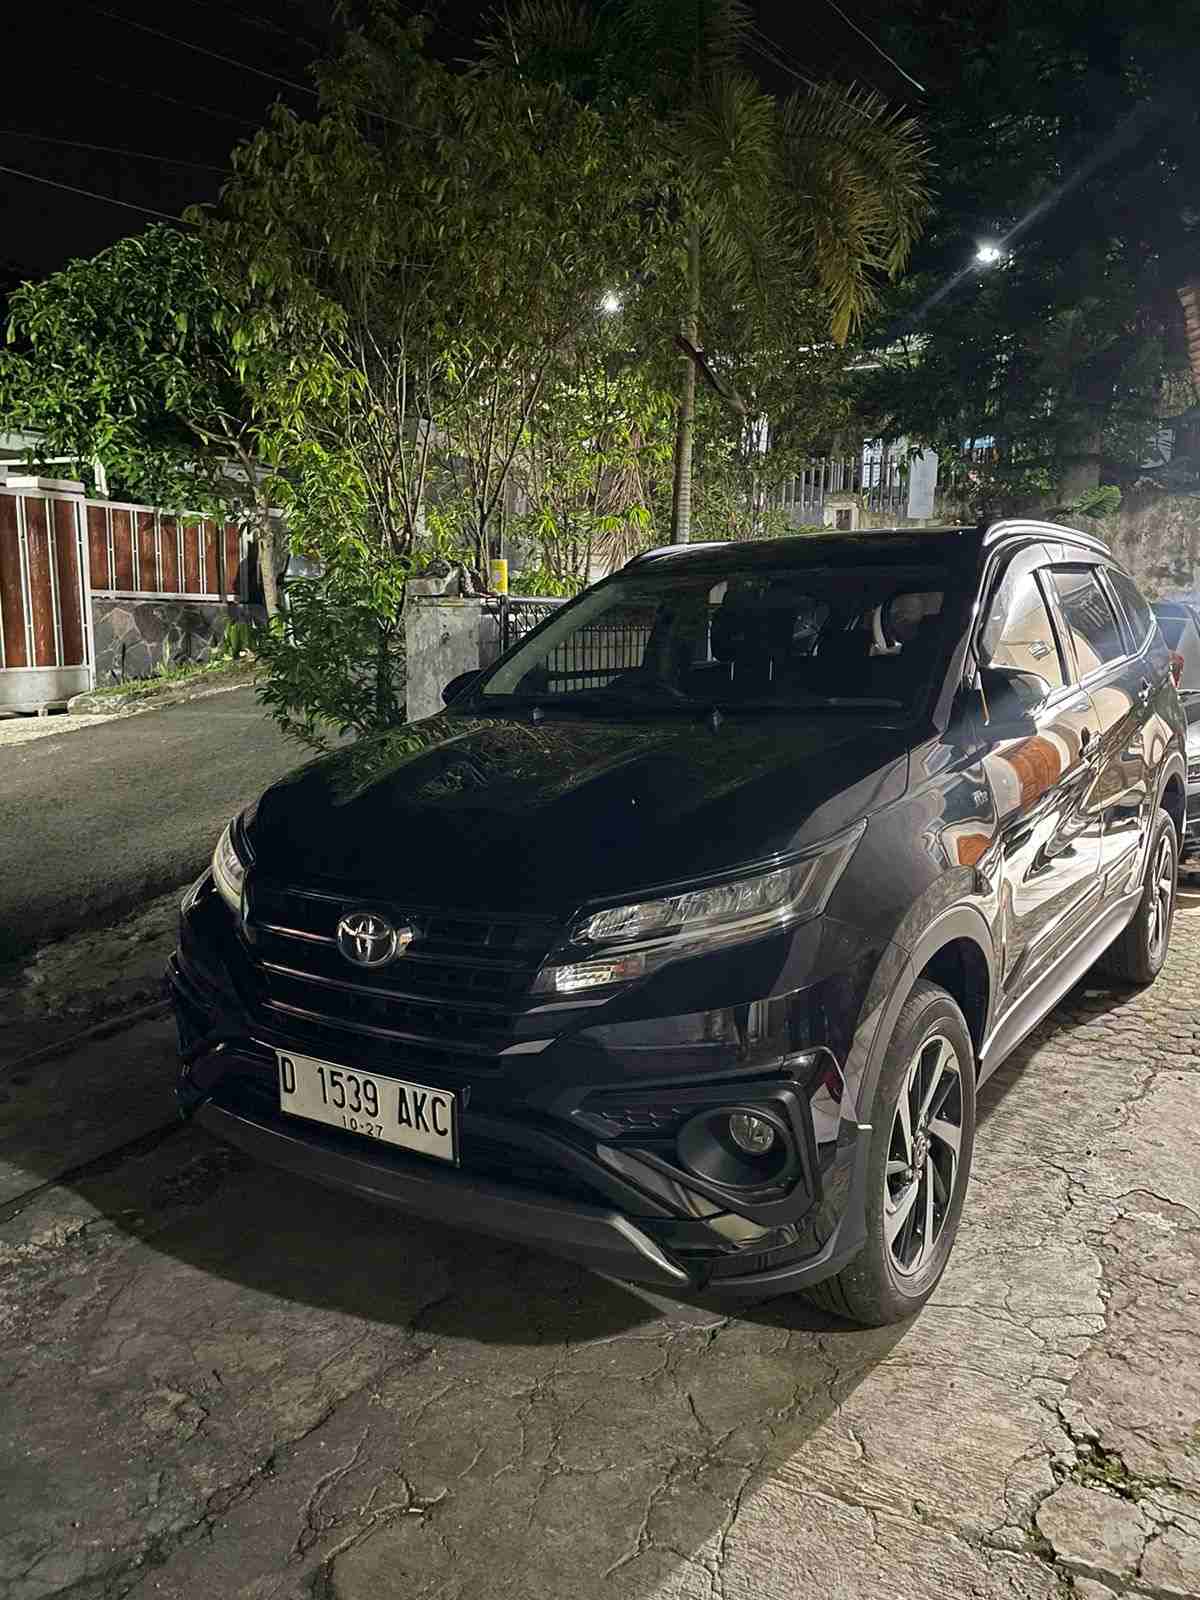 Rental Mobil Avanza Di Semarang